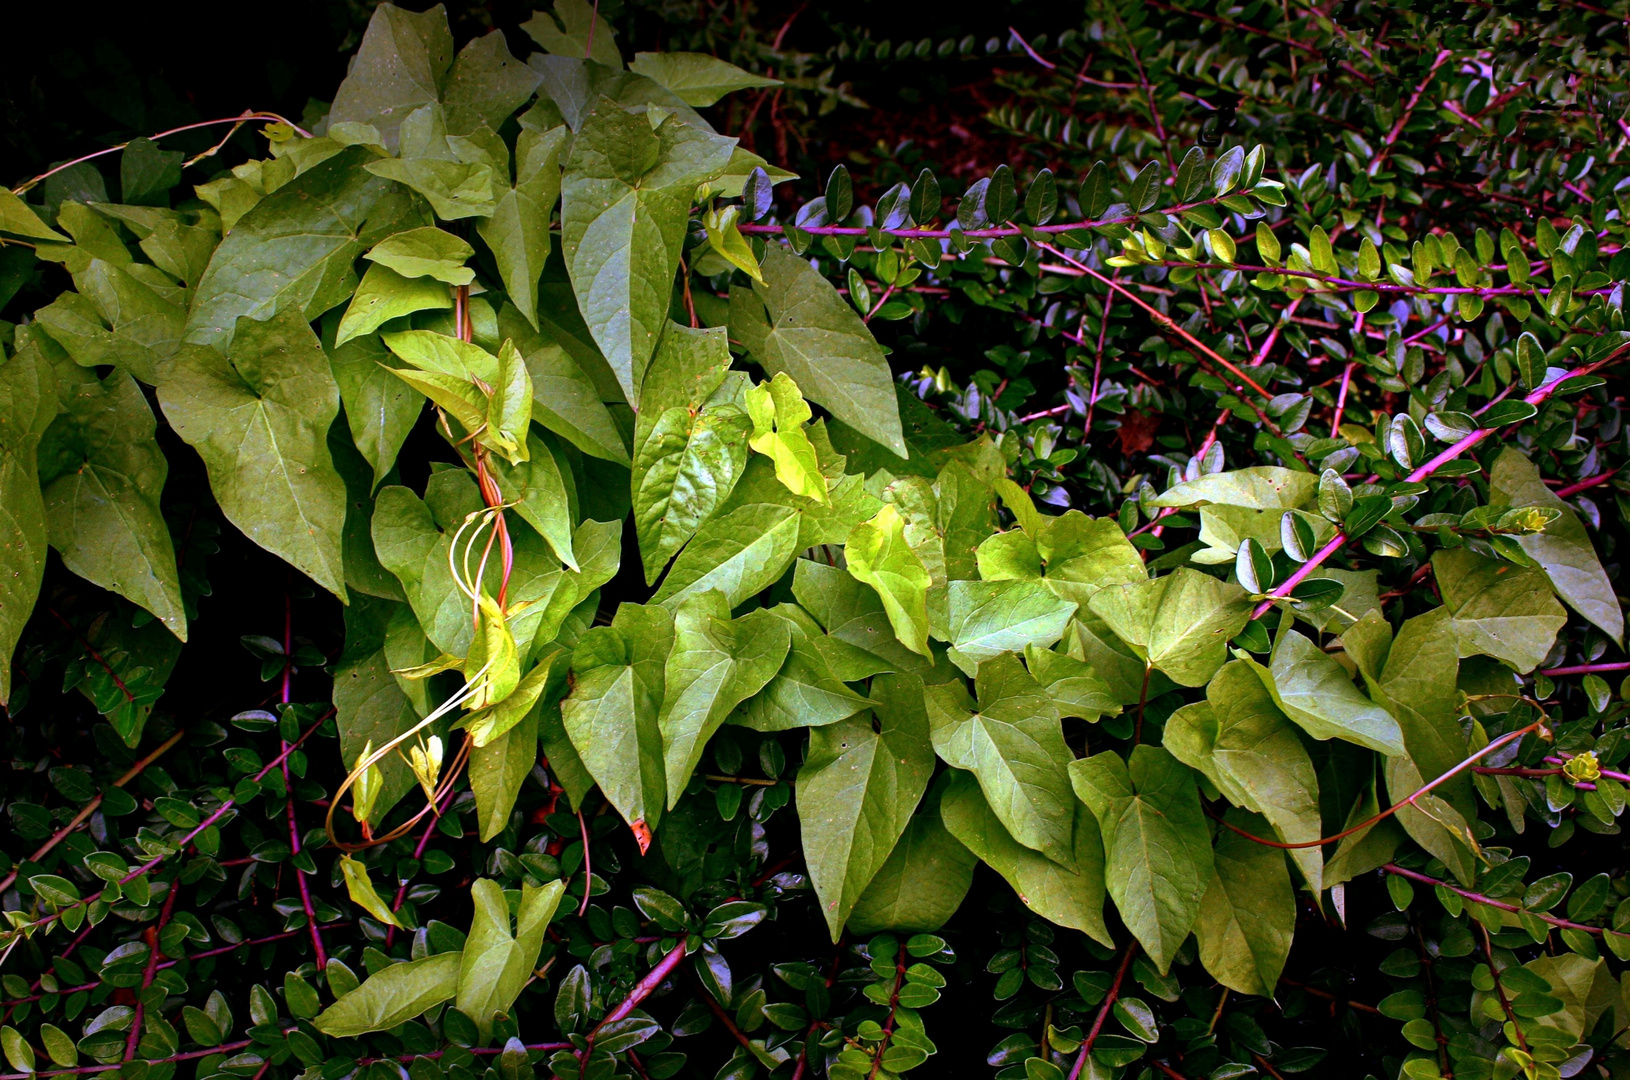 Plantes et feuilles en bordure de jardin public